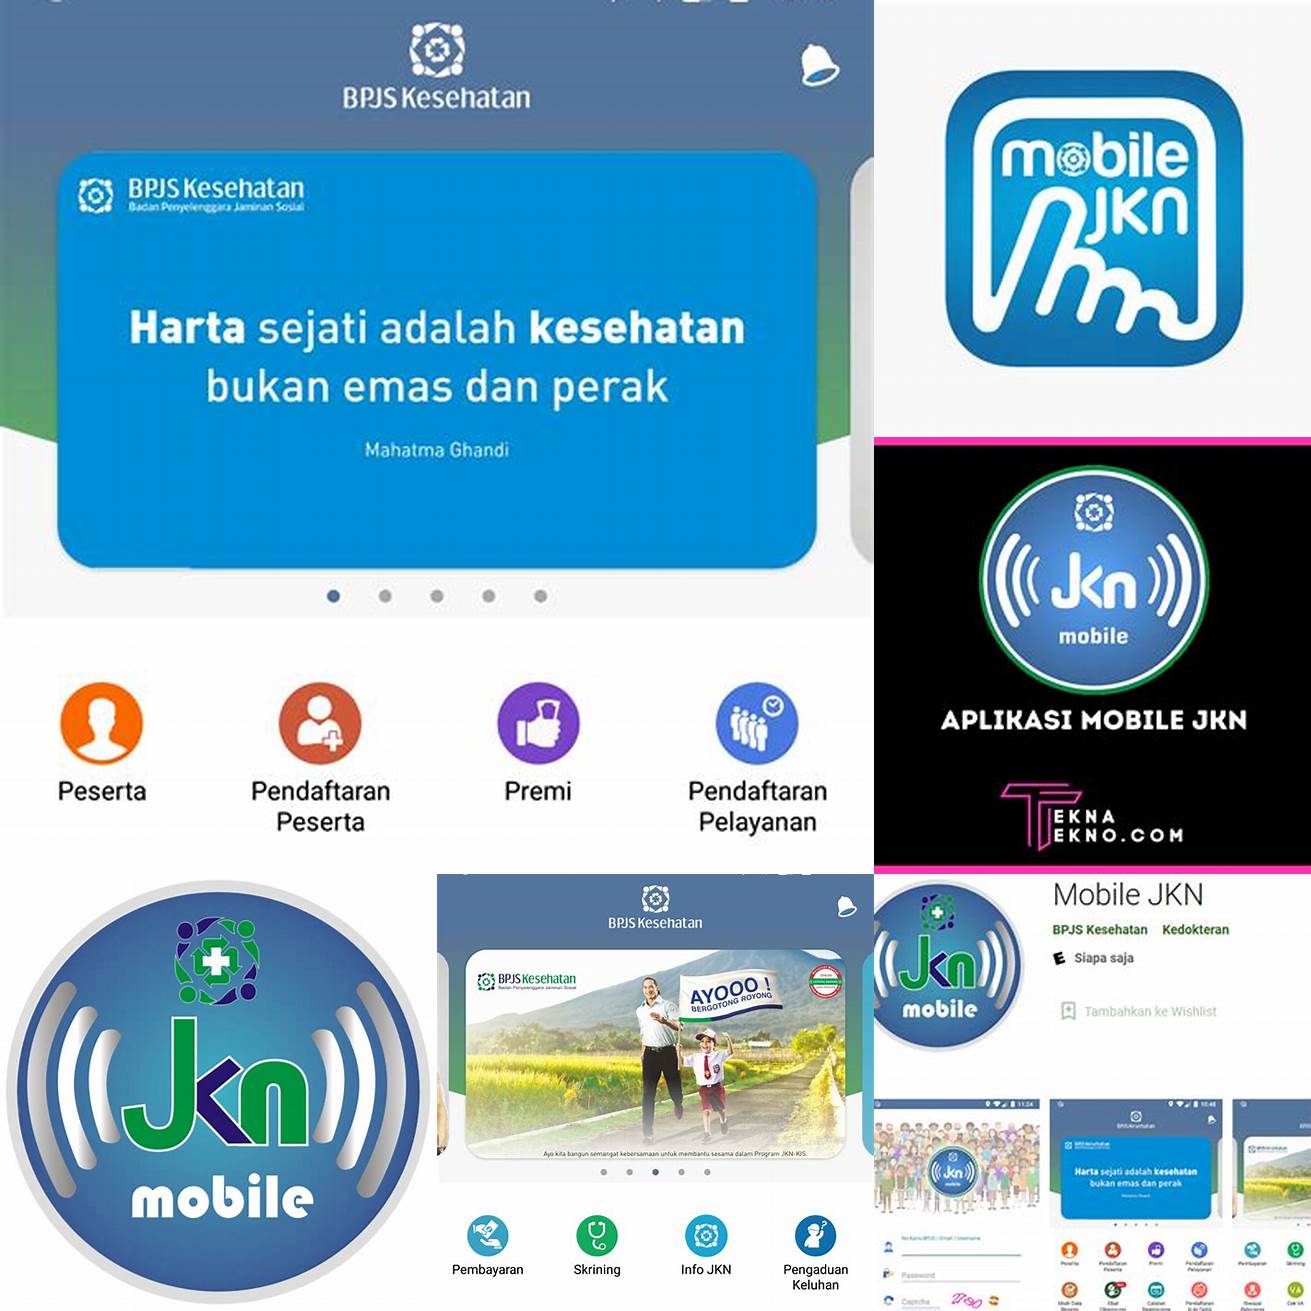 Unduh aplikasi JKN Mobile dari Google Play Store atau App Store